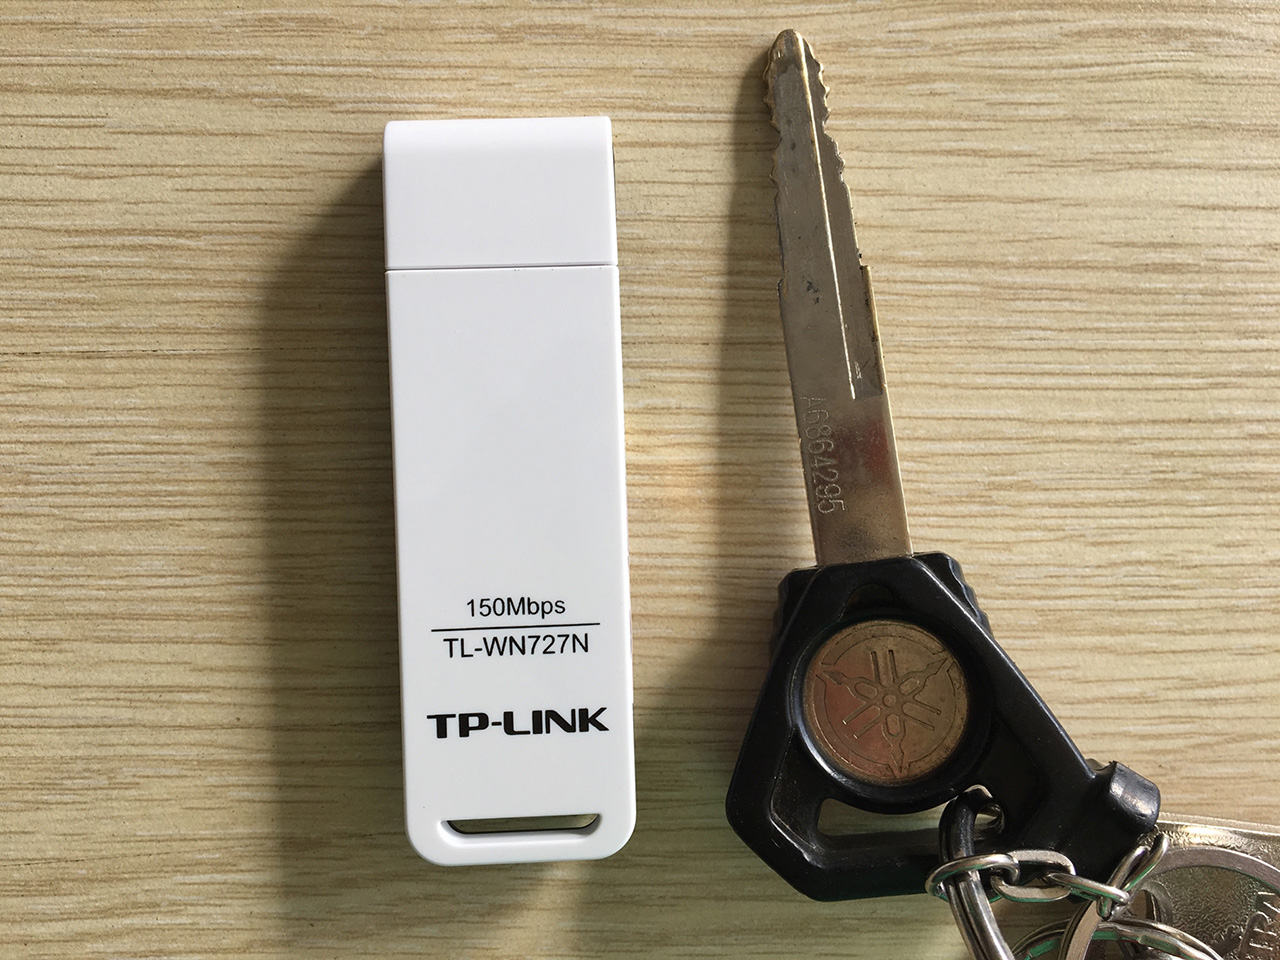 Hướng dẫn cài đặt USB thu Wifi TP-Link TL-WN727N » BAZANTECH VIỆT NAM - Công nghệ cho cuộc sống đơn giản